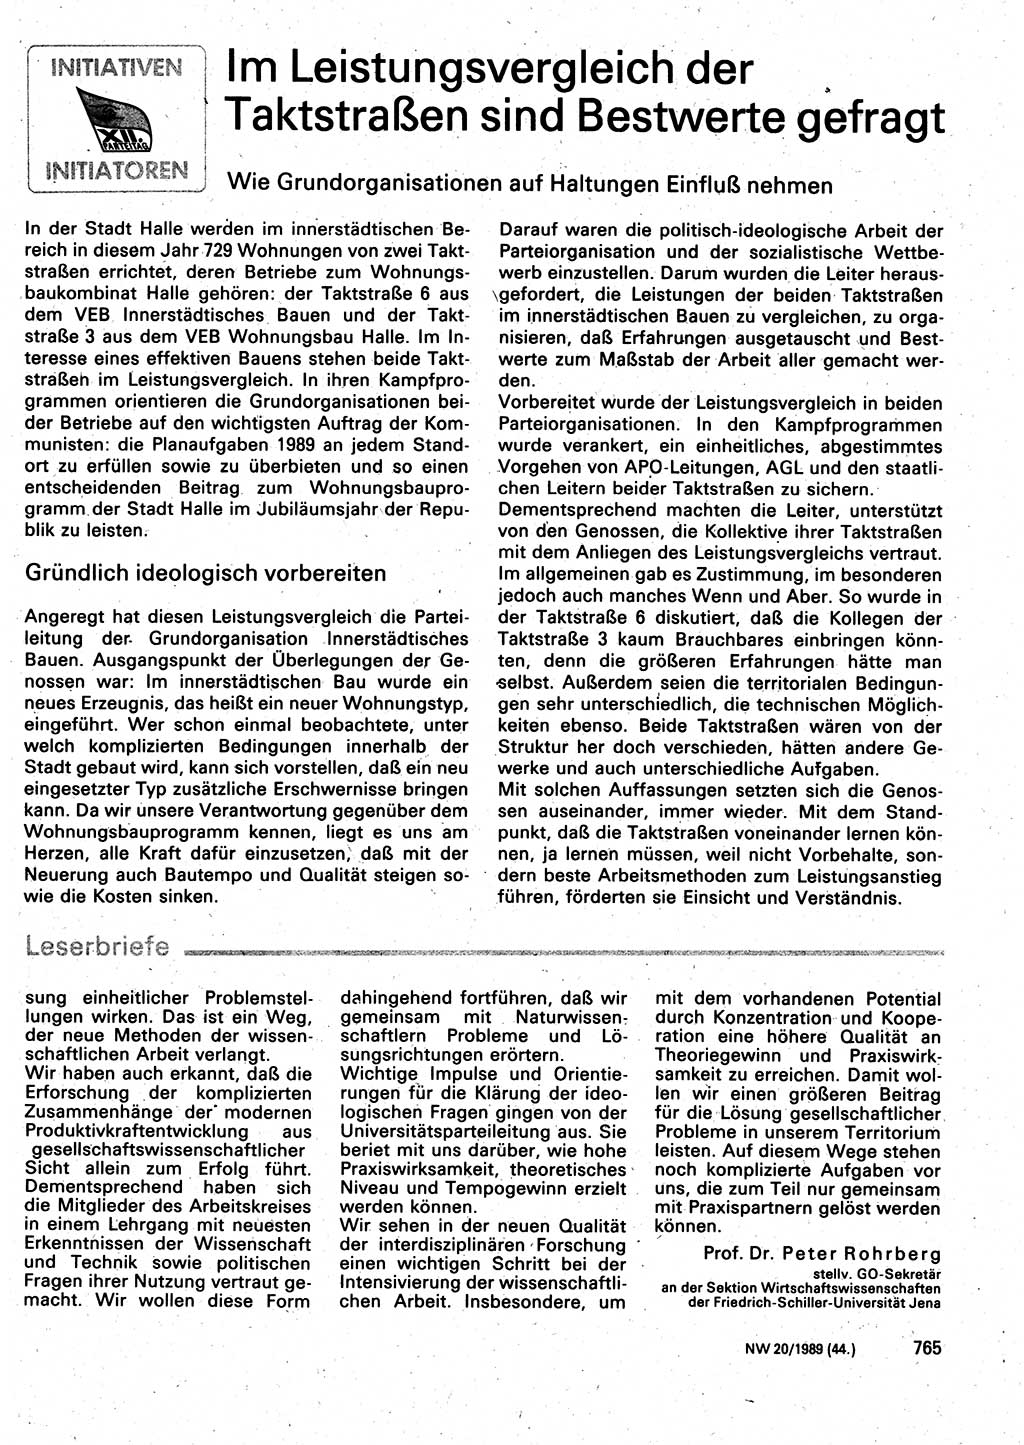 Neuer Weg (NW), Organ des Zentralkomitees (ZK) der SED (Sozialistische Einheitspartei Deutschlands) für Fragen des Parteilebens, 44. Jahrgang [Deutsche Demokratische Republik (DDR)] 1989, Seite 765 (NW ZK SED DDR 1989, S. 765)